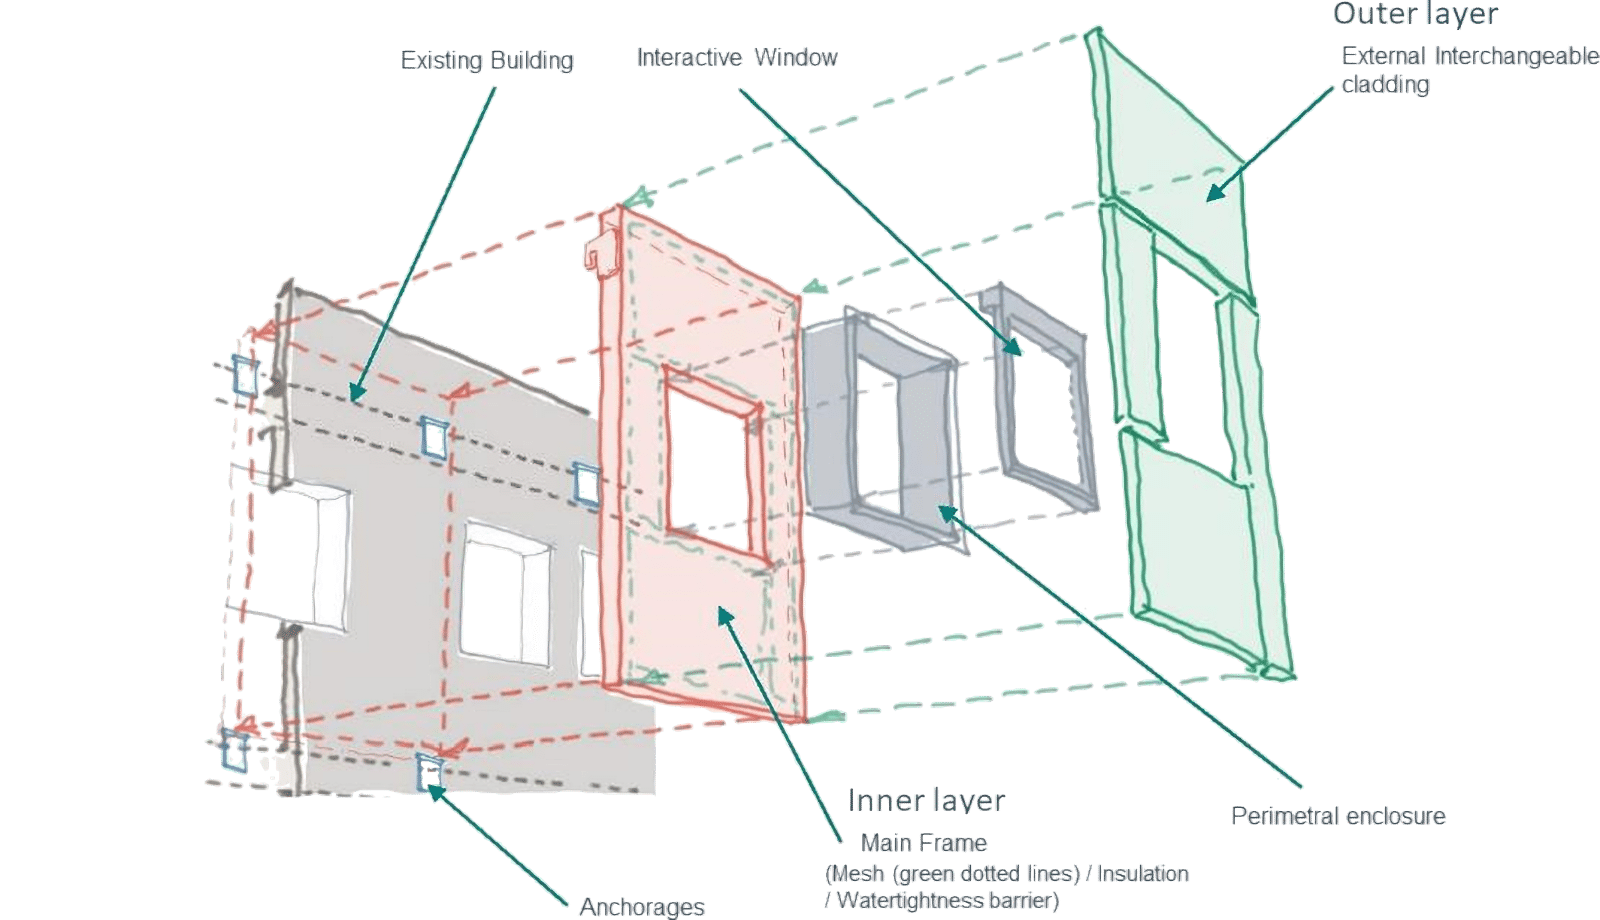 Modular façade system concept